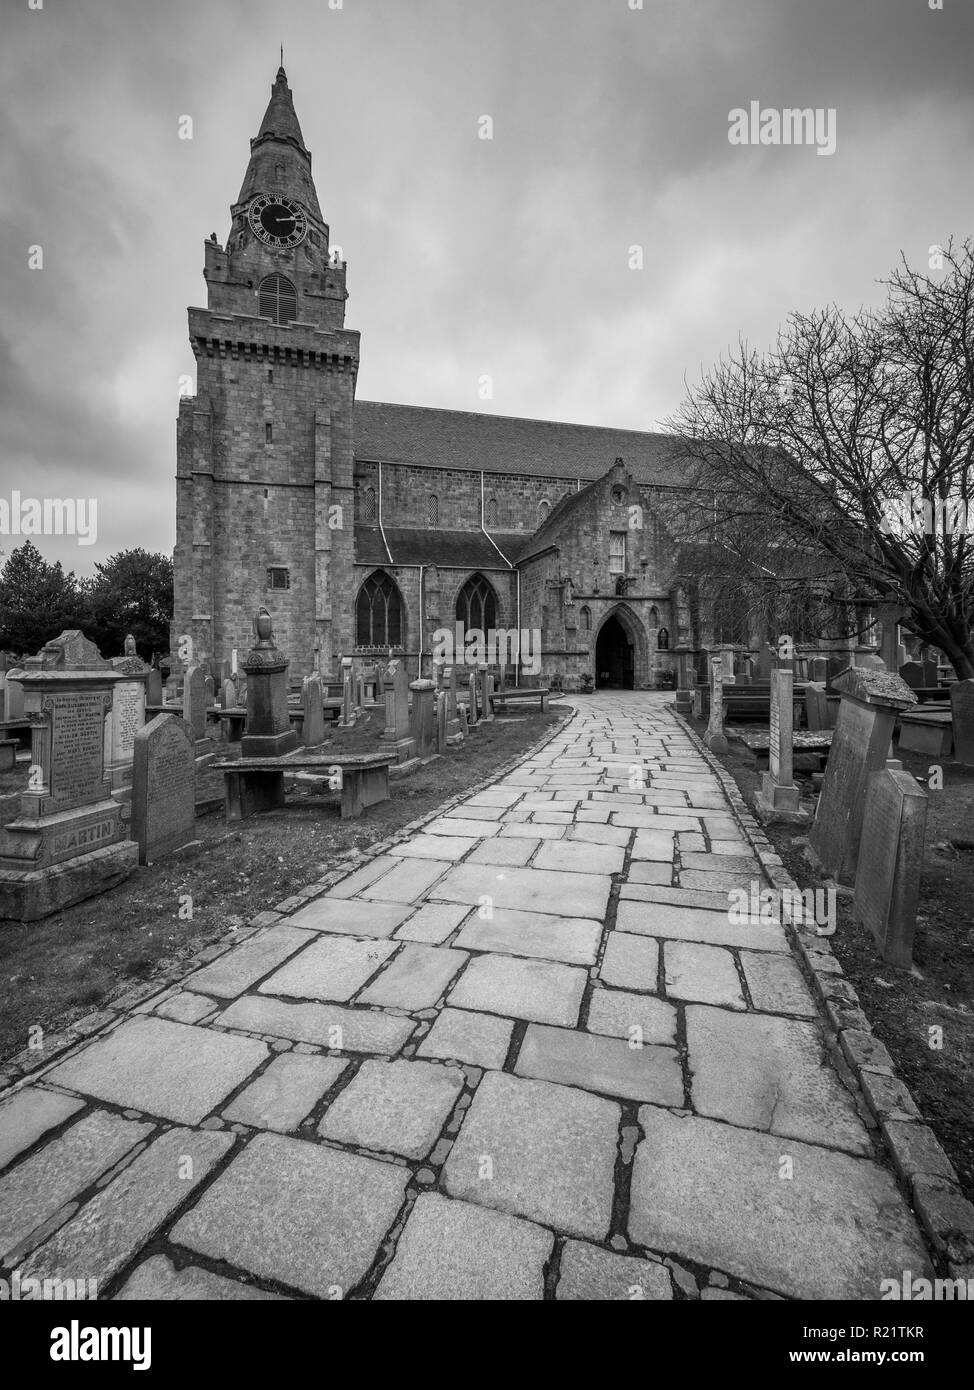 Die Kathedrale St. Machar in Aberdeen Schottland Schuß an einem bewölkten Tag. Stockfoto